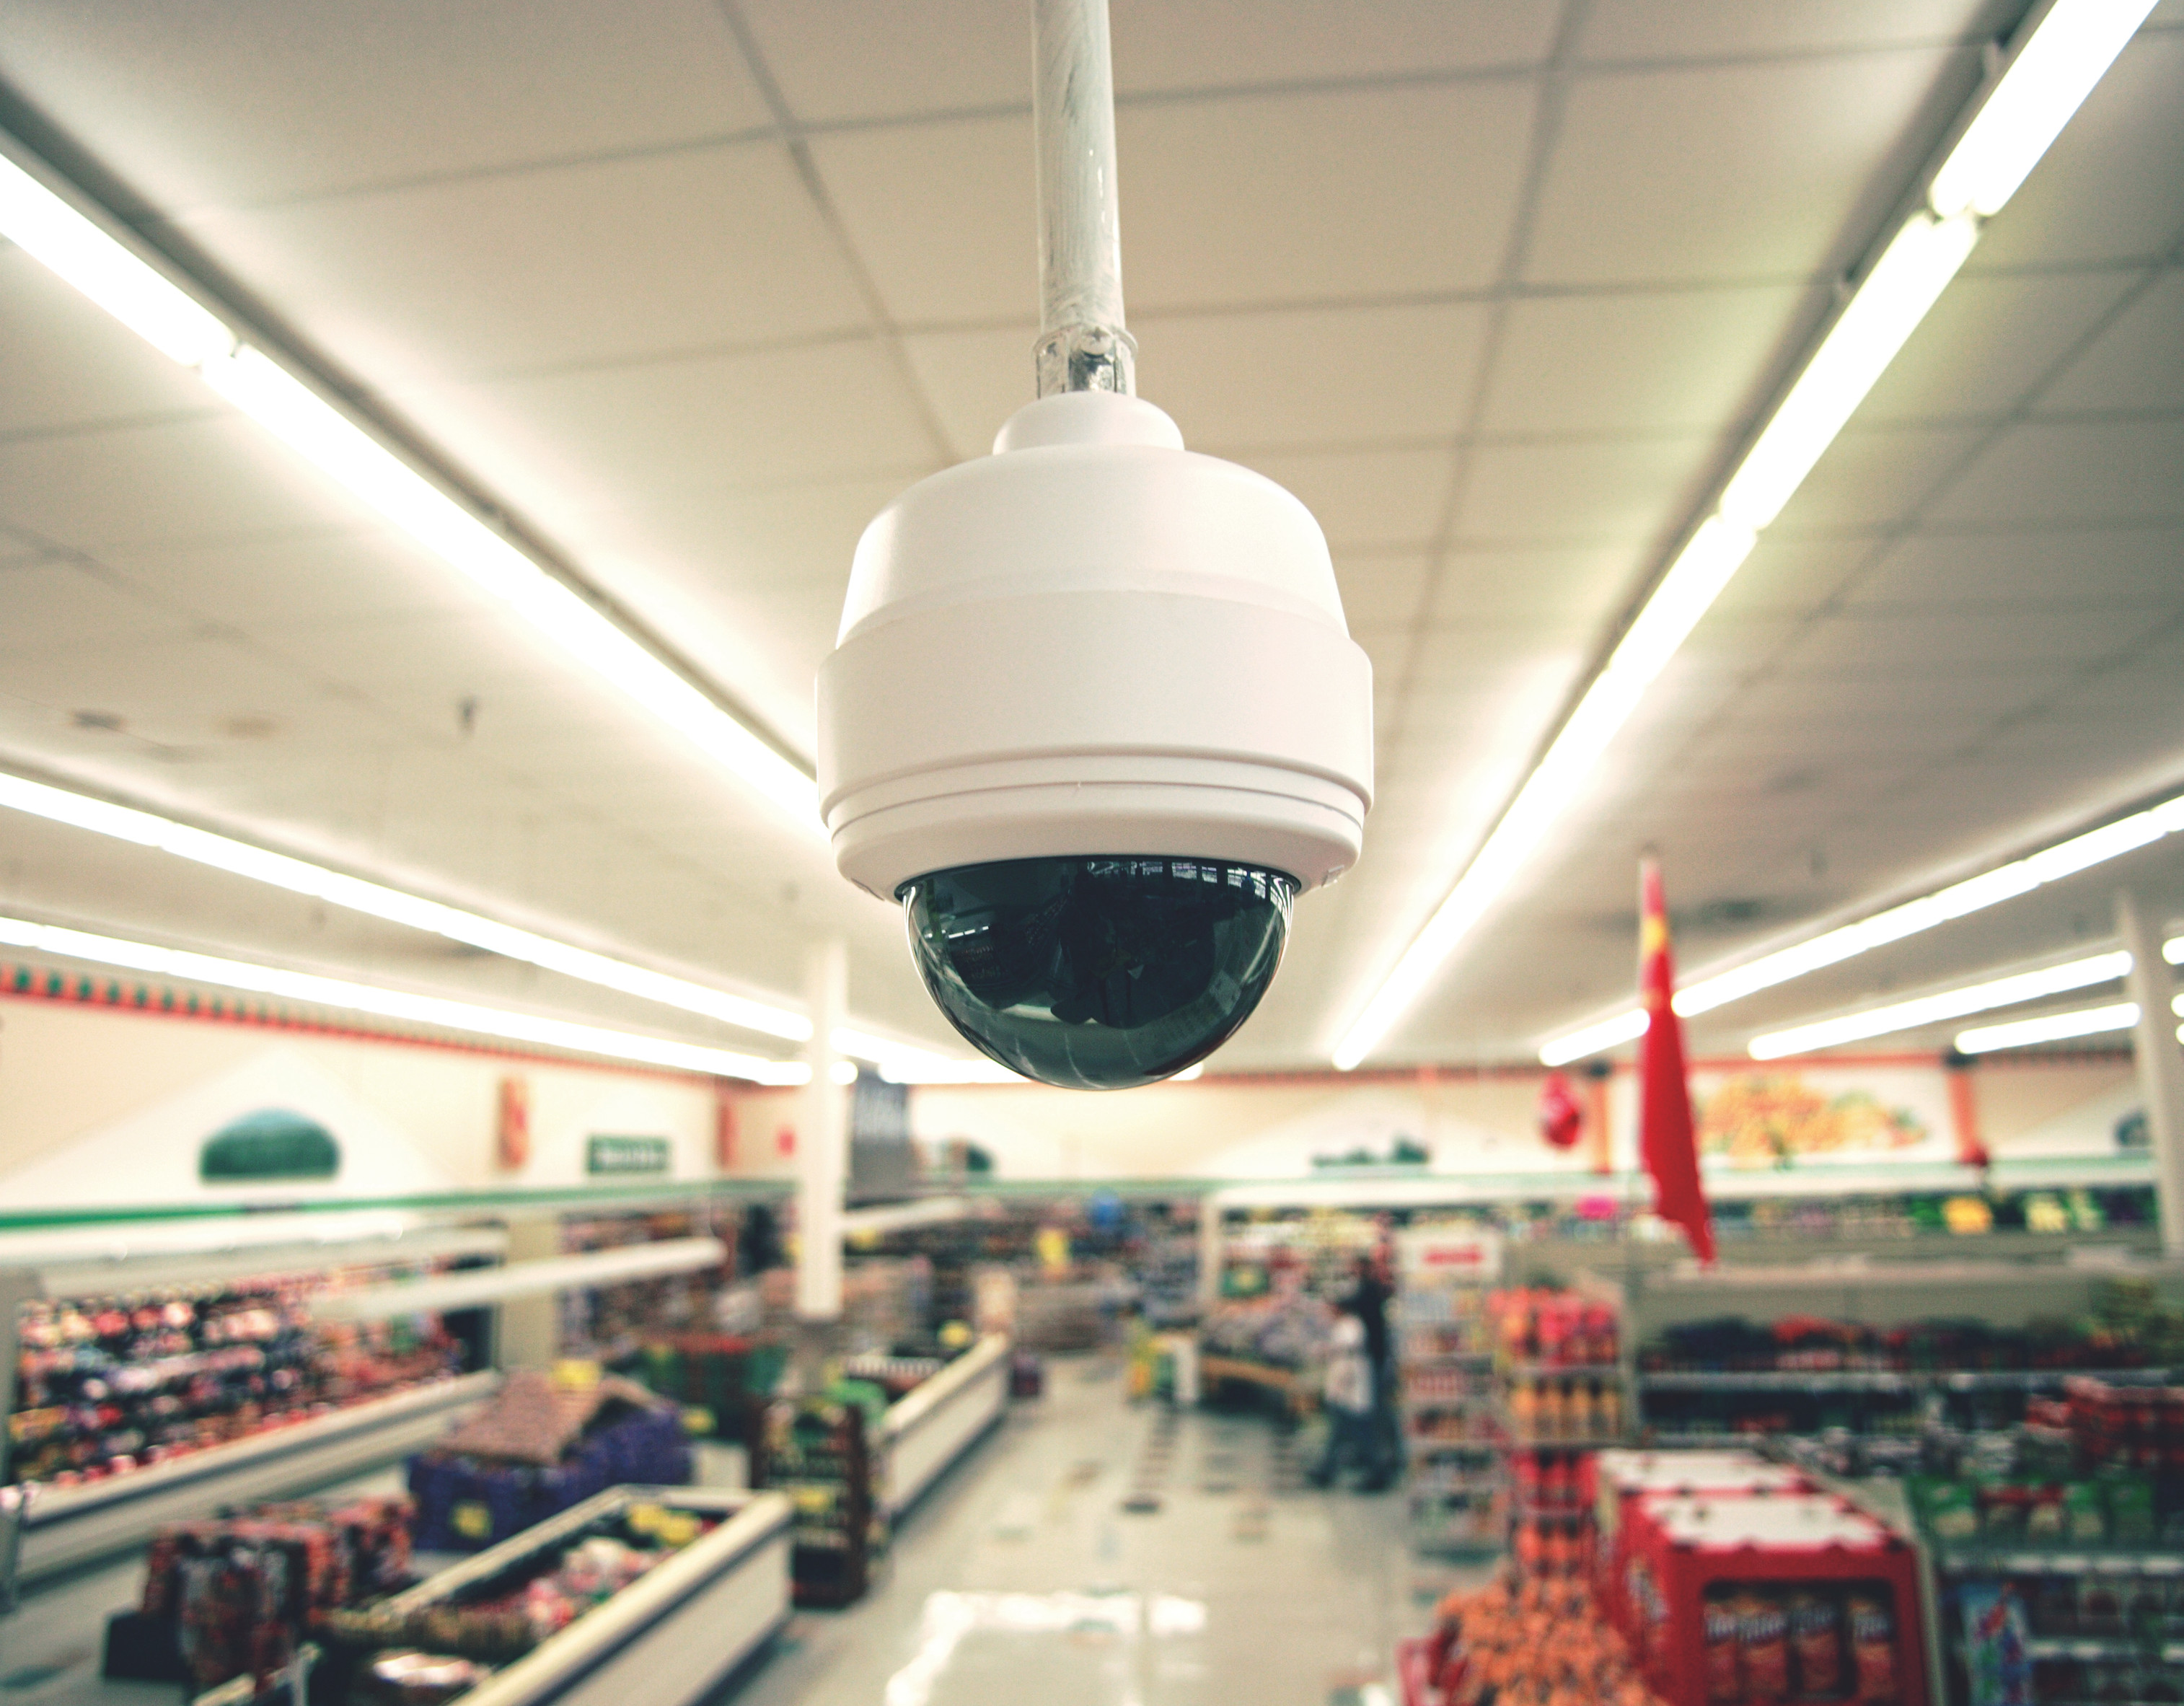 Мой выбор видеонаблюдение. Видеонаблюдение в магазине. Камера видеонаблюдения. Камера наблюдения в магазине. Видеонаблюдение в супермаркете.